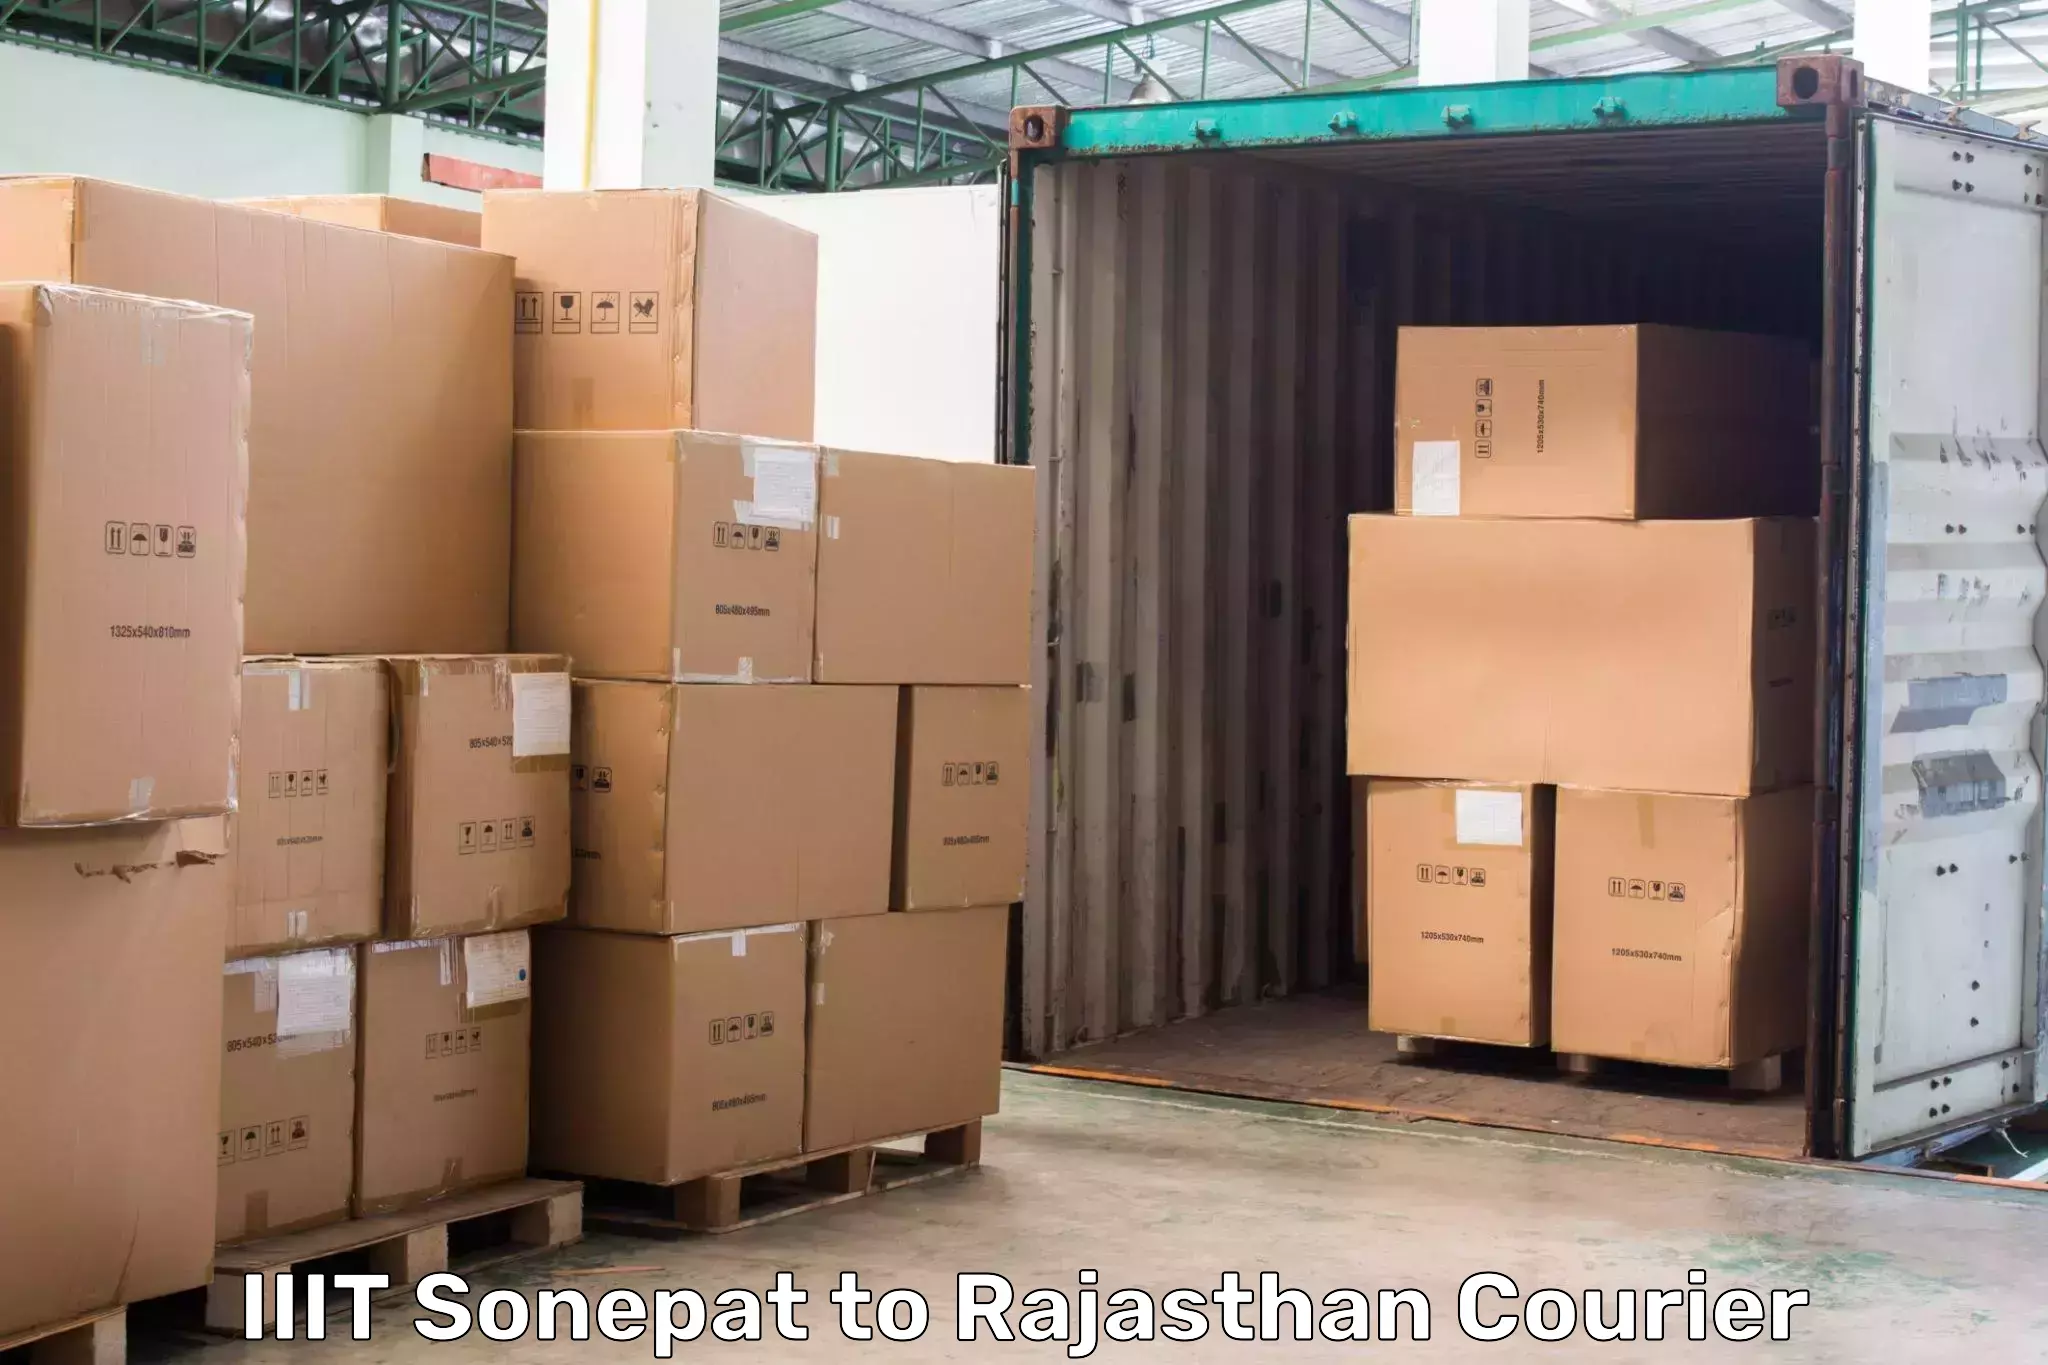 Local courier options IIIT Sonepat to Bonli